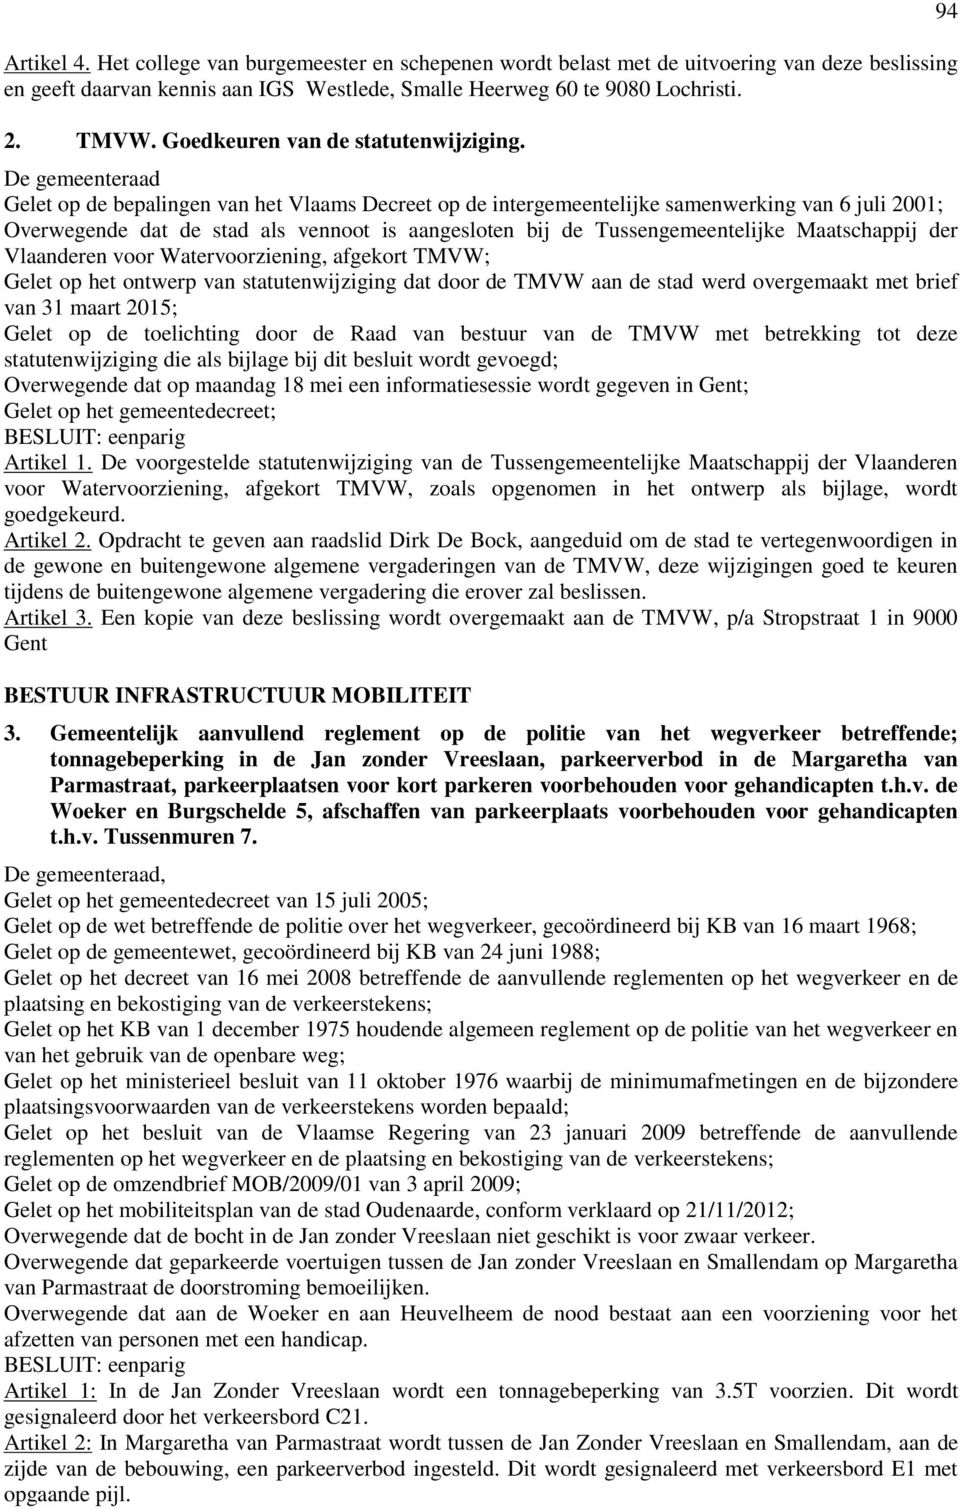 De gemeenteraad Gelet op de bepalingen van het Vlaams Decreet op de intergemeentelijke samenwerking van 6 juli 2001; Overwegende dat de stad als vennoot is aangesloten bij de Tussengemeentelijke